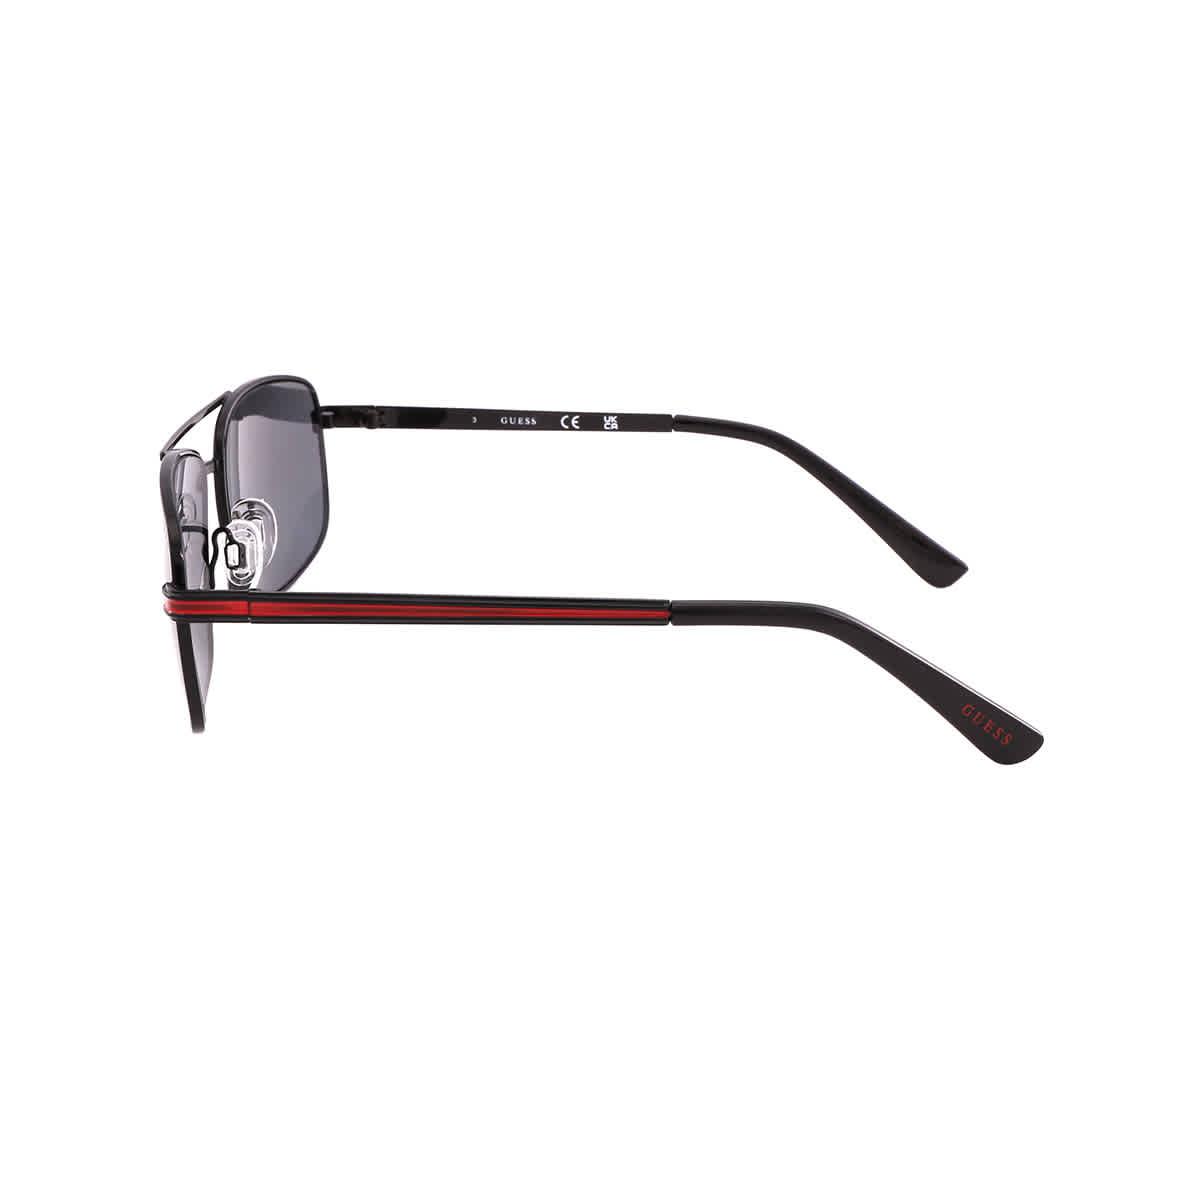 Factory Metal Navigator Sunglasses - Black